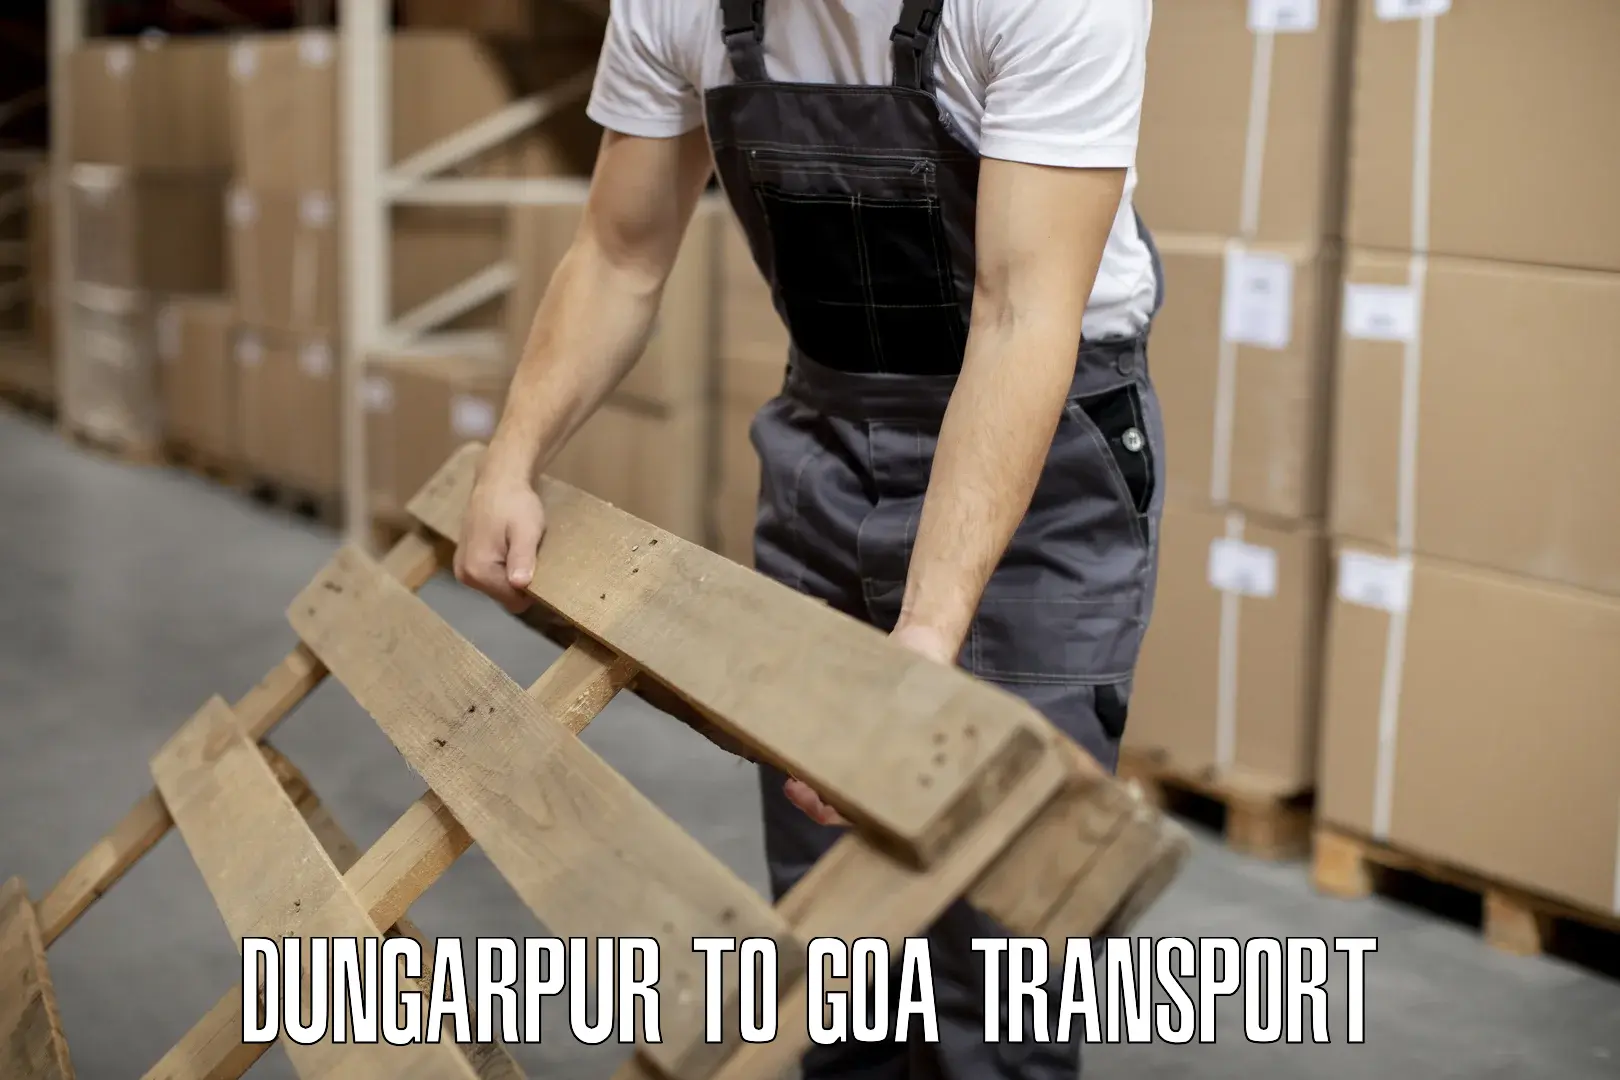 Furniture transport service Dungarpur to Panjim